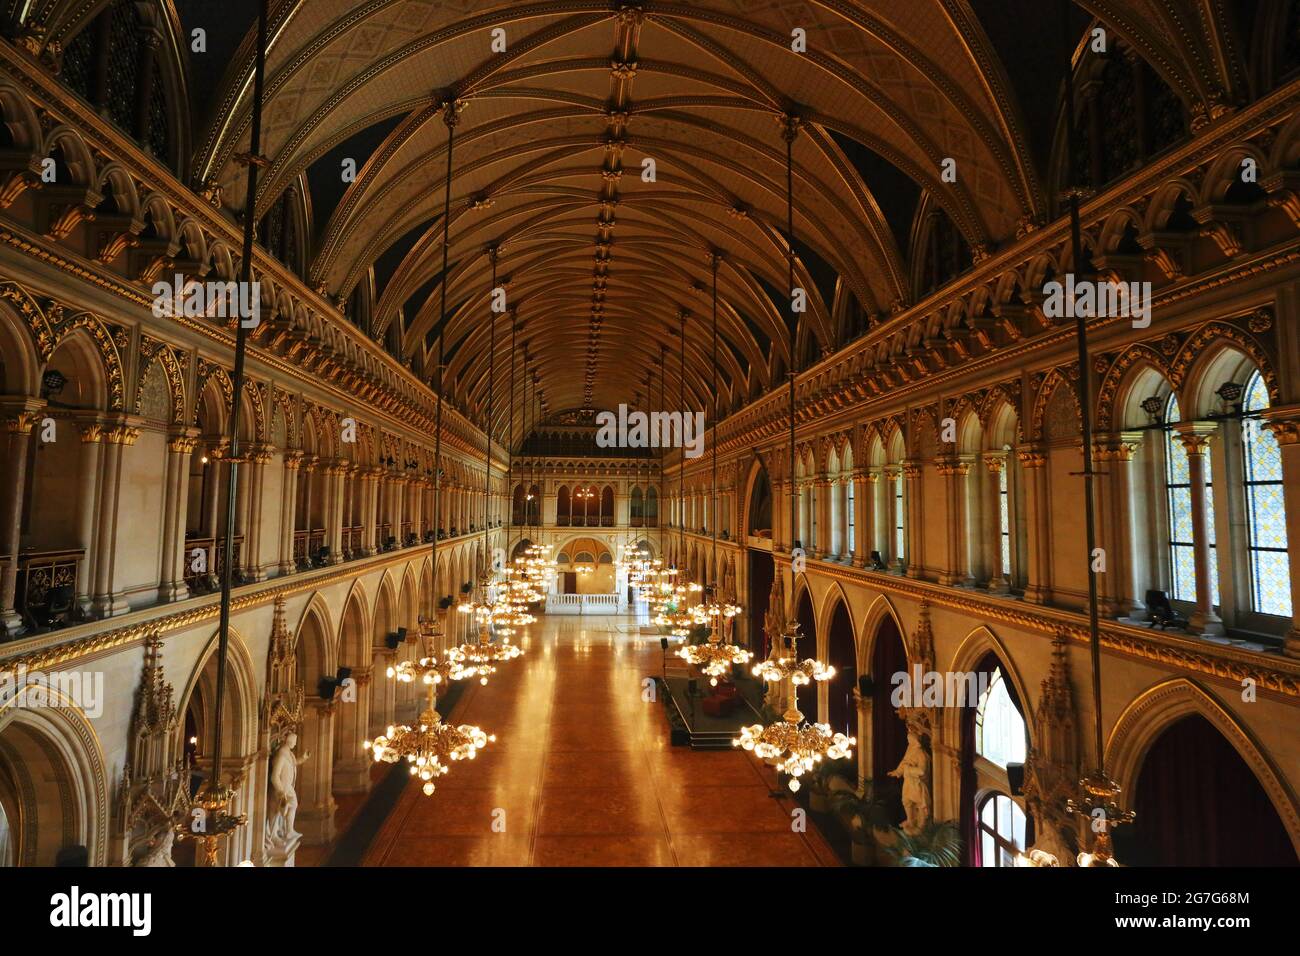 Wien, Rathaus, Festsaal mit Kronleuchter und Festbeleuchtung im historischen Rathaussaal Stock Photo